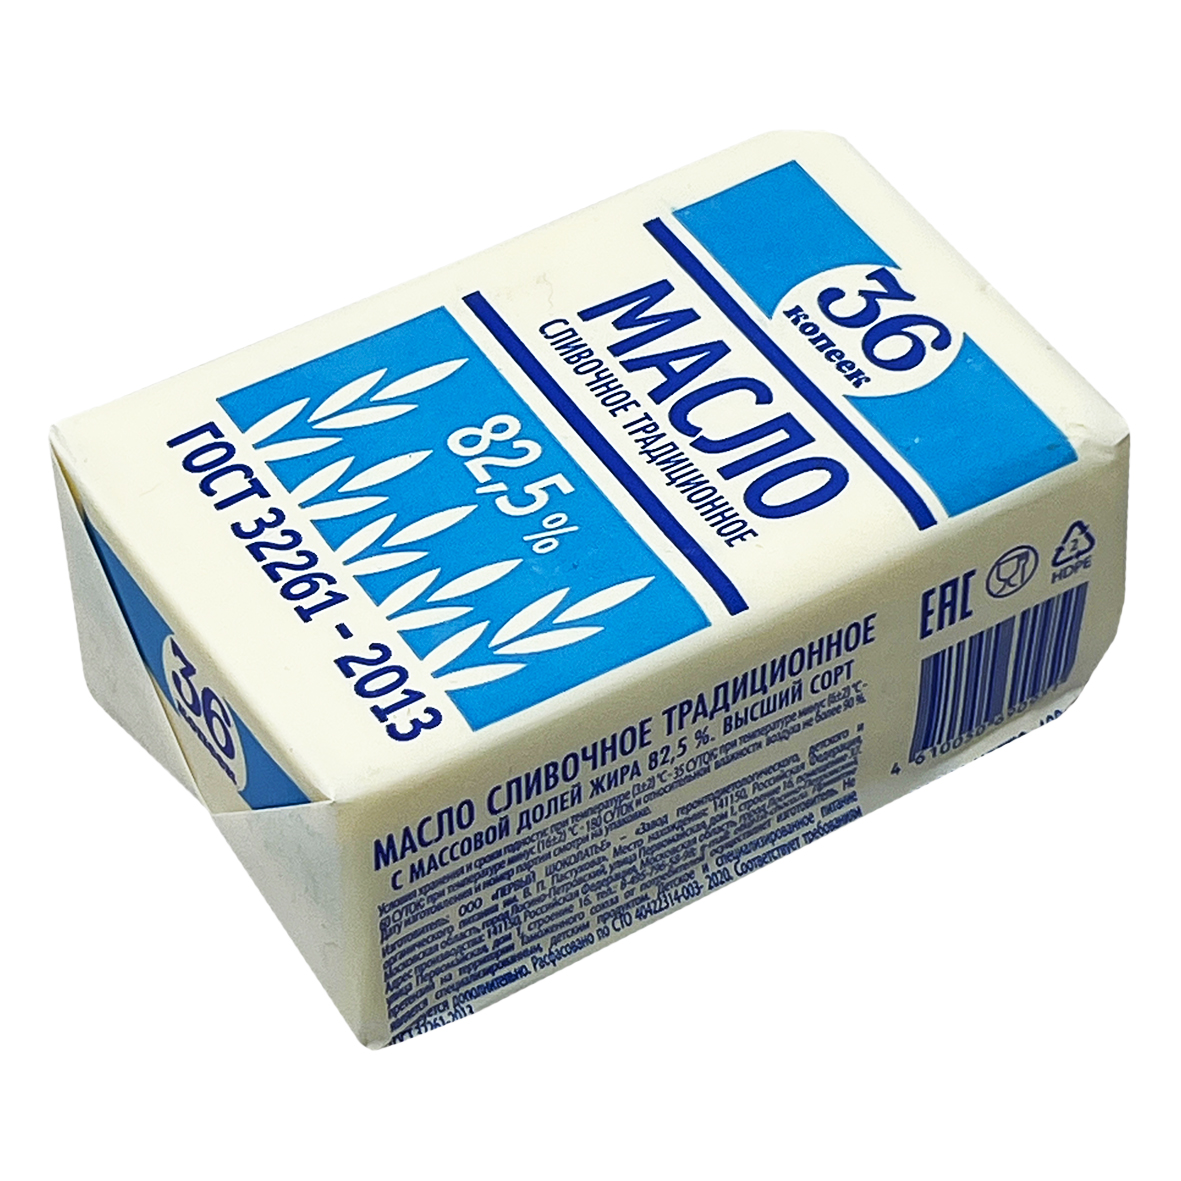 Масло слив 82.5% Традиц 36 коп 180г  - интернет-магазин Близнецы